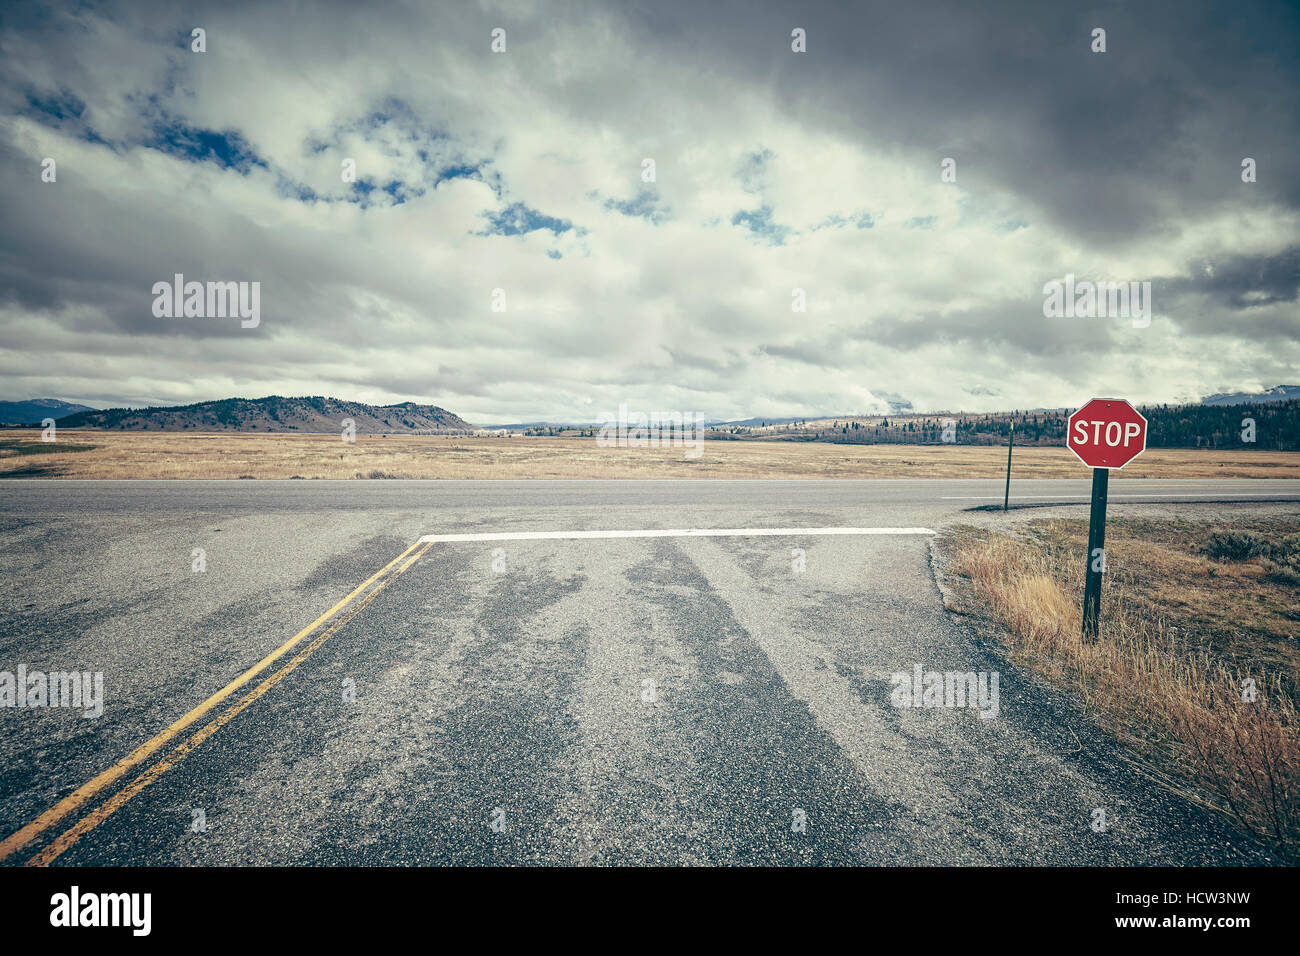 Retro Road intersección estilizados con señal de stop en un día nublado, imagen conceptual, EE.UU.. Foto de stock